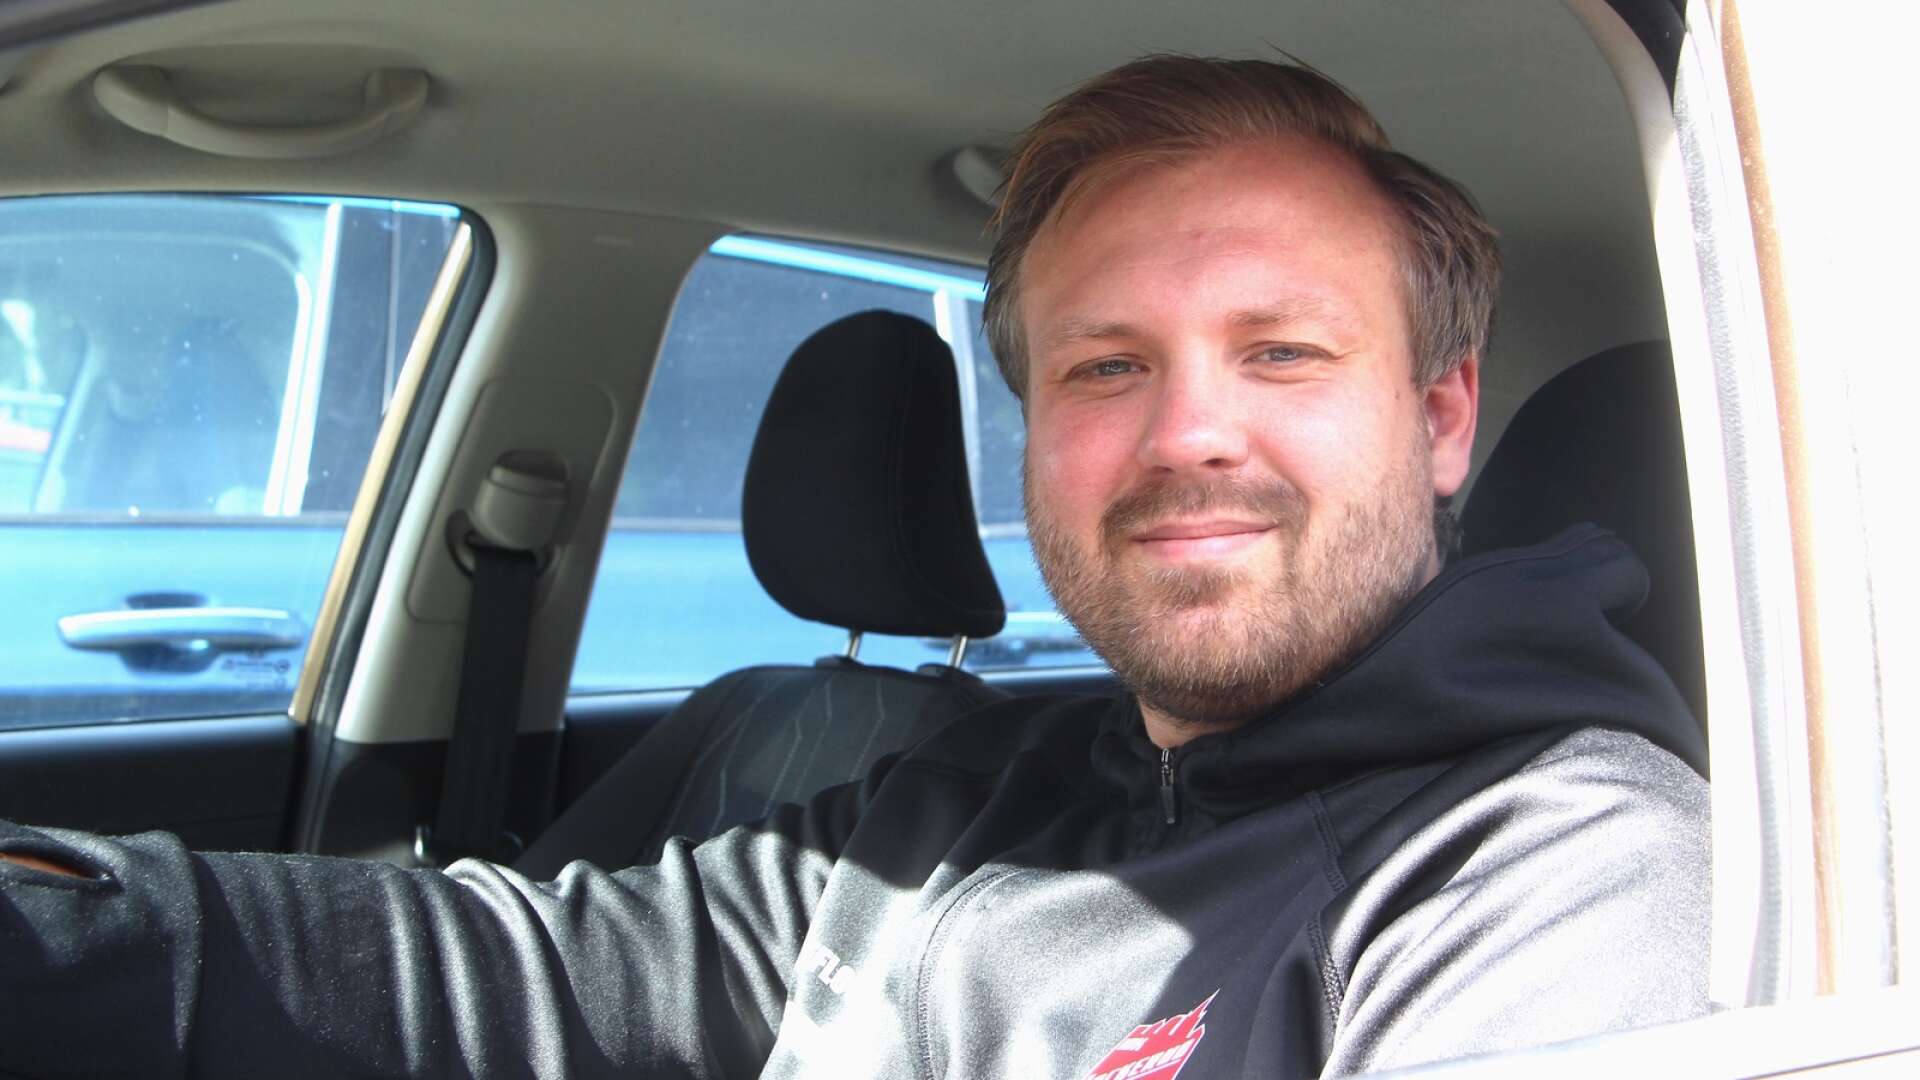 Senast Mickael Fredriksson tränade ett lag i SSL, säsongen 2019/2020, pendlade han mellan hemmet i Gullspång, jobbet i Mariestad och tränarsysslan i Jönköping. När han nu är tillbaka i högstaligan har han tagit SSL till samma ort som sitt arbete.